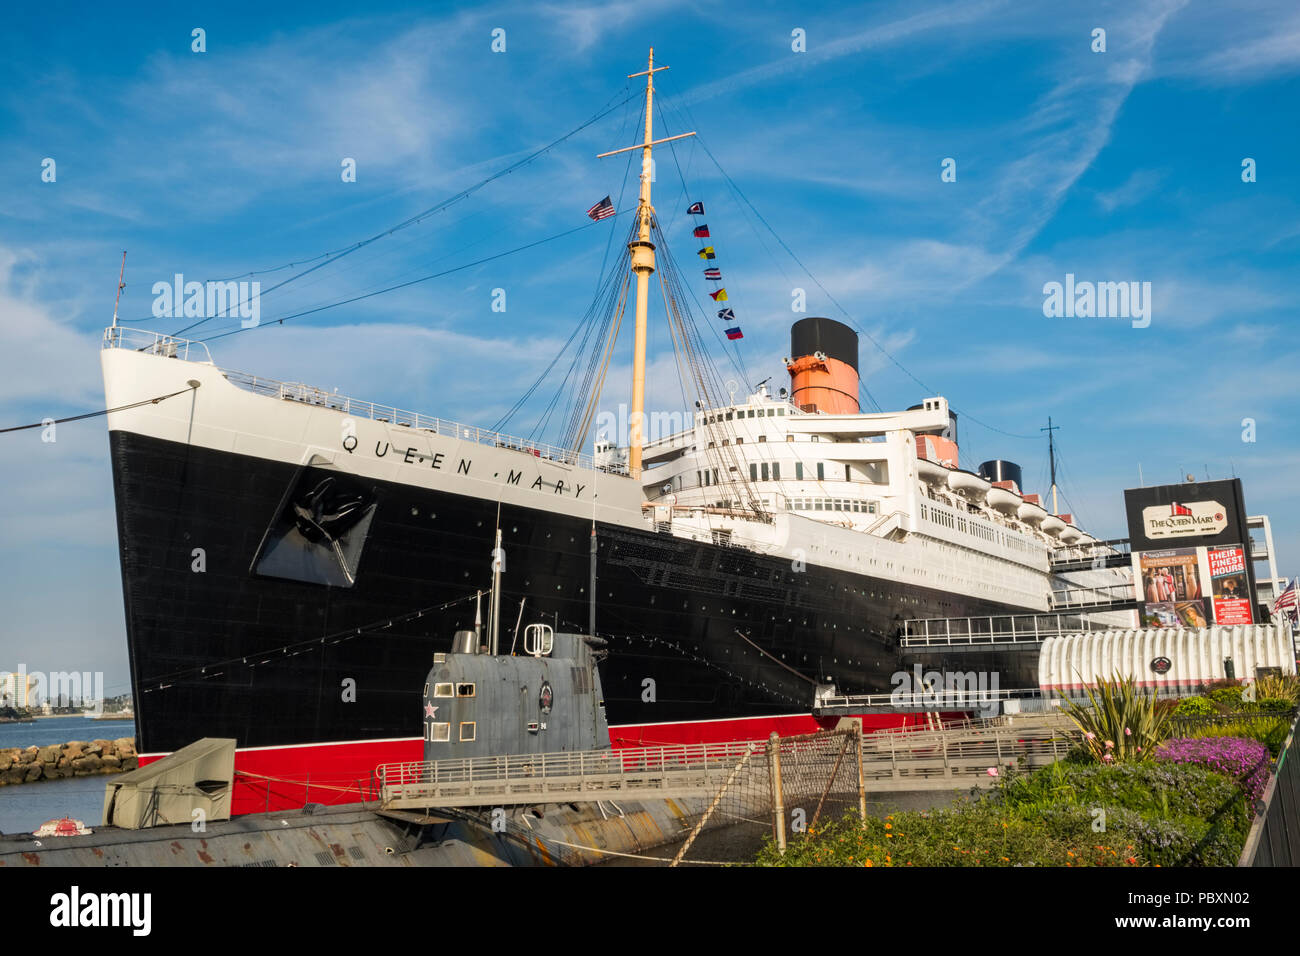 Die Queen Mary Schiff, heute ein Museum und Anziehungspunkt mit dem russischen U-Boot der Skorpion angedockt Daneben, im kalifornischen Long Beach, CA, US Stockfoto